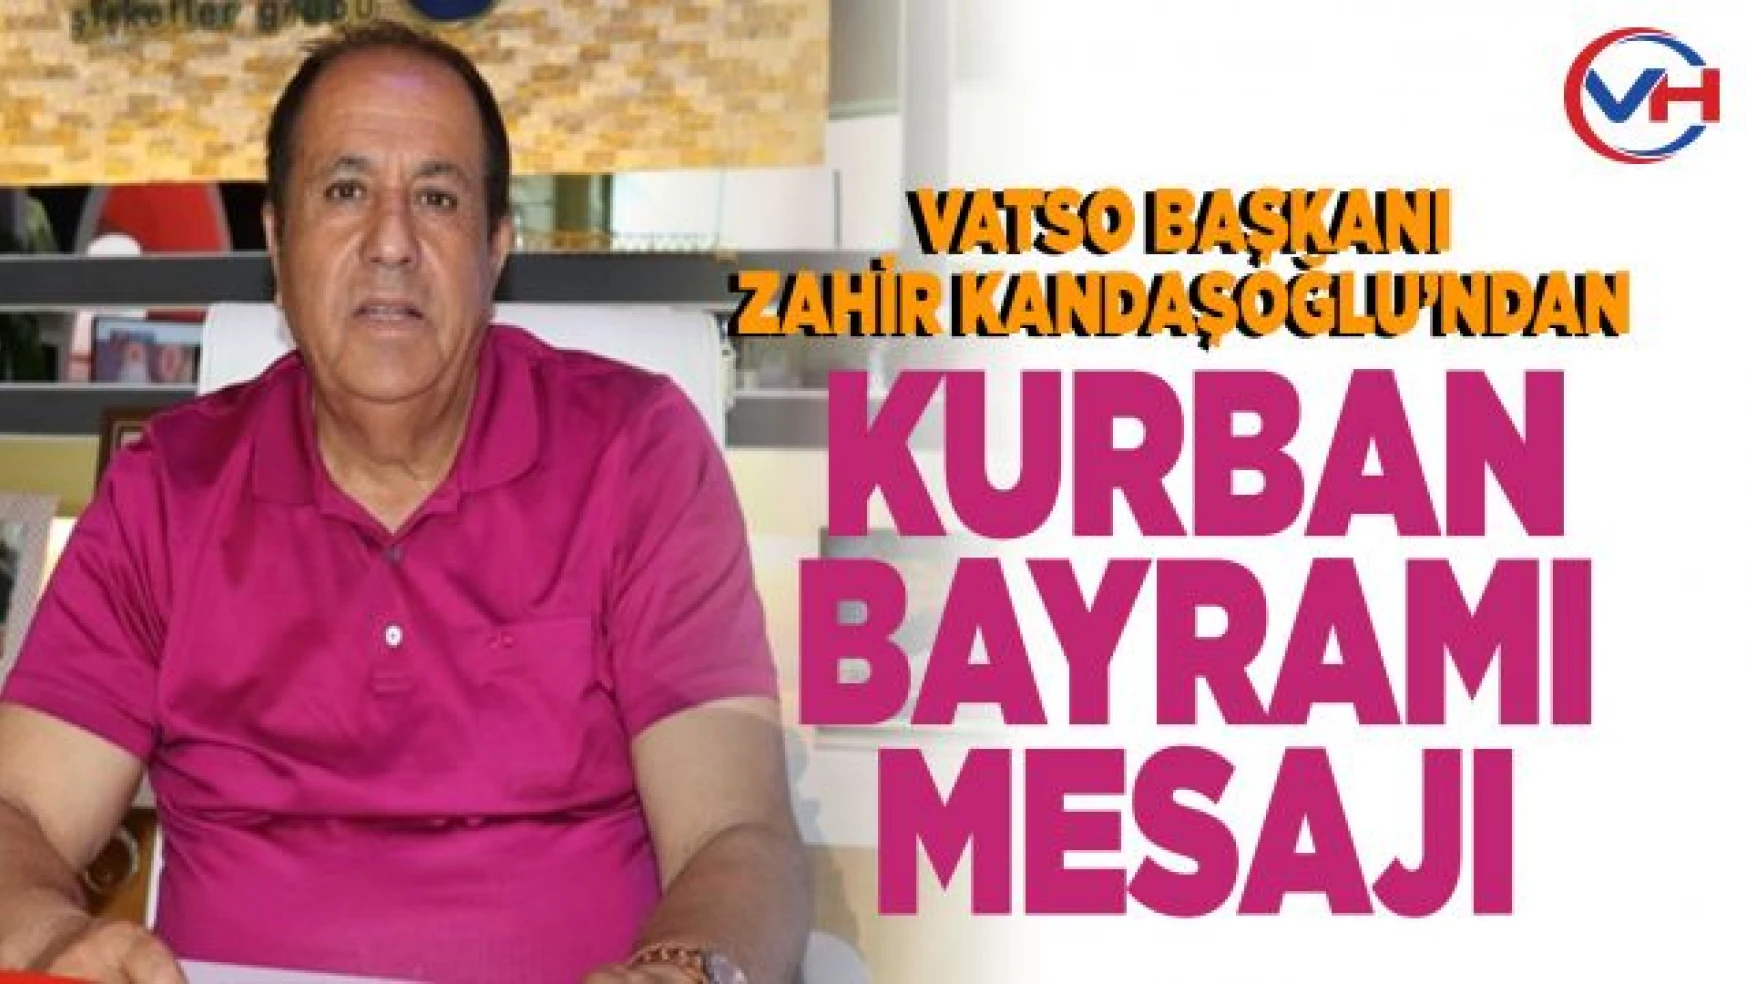 VATSO Başkanı Kandaşoğlu'ndan Kurban Bayramı mesajı